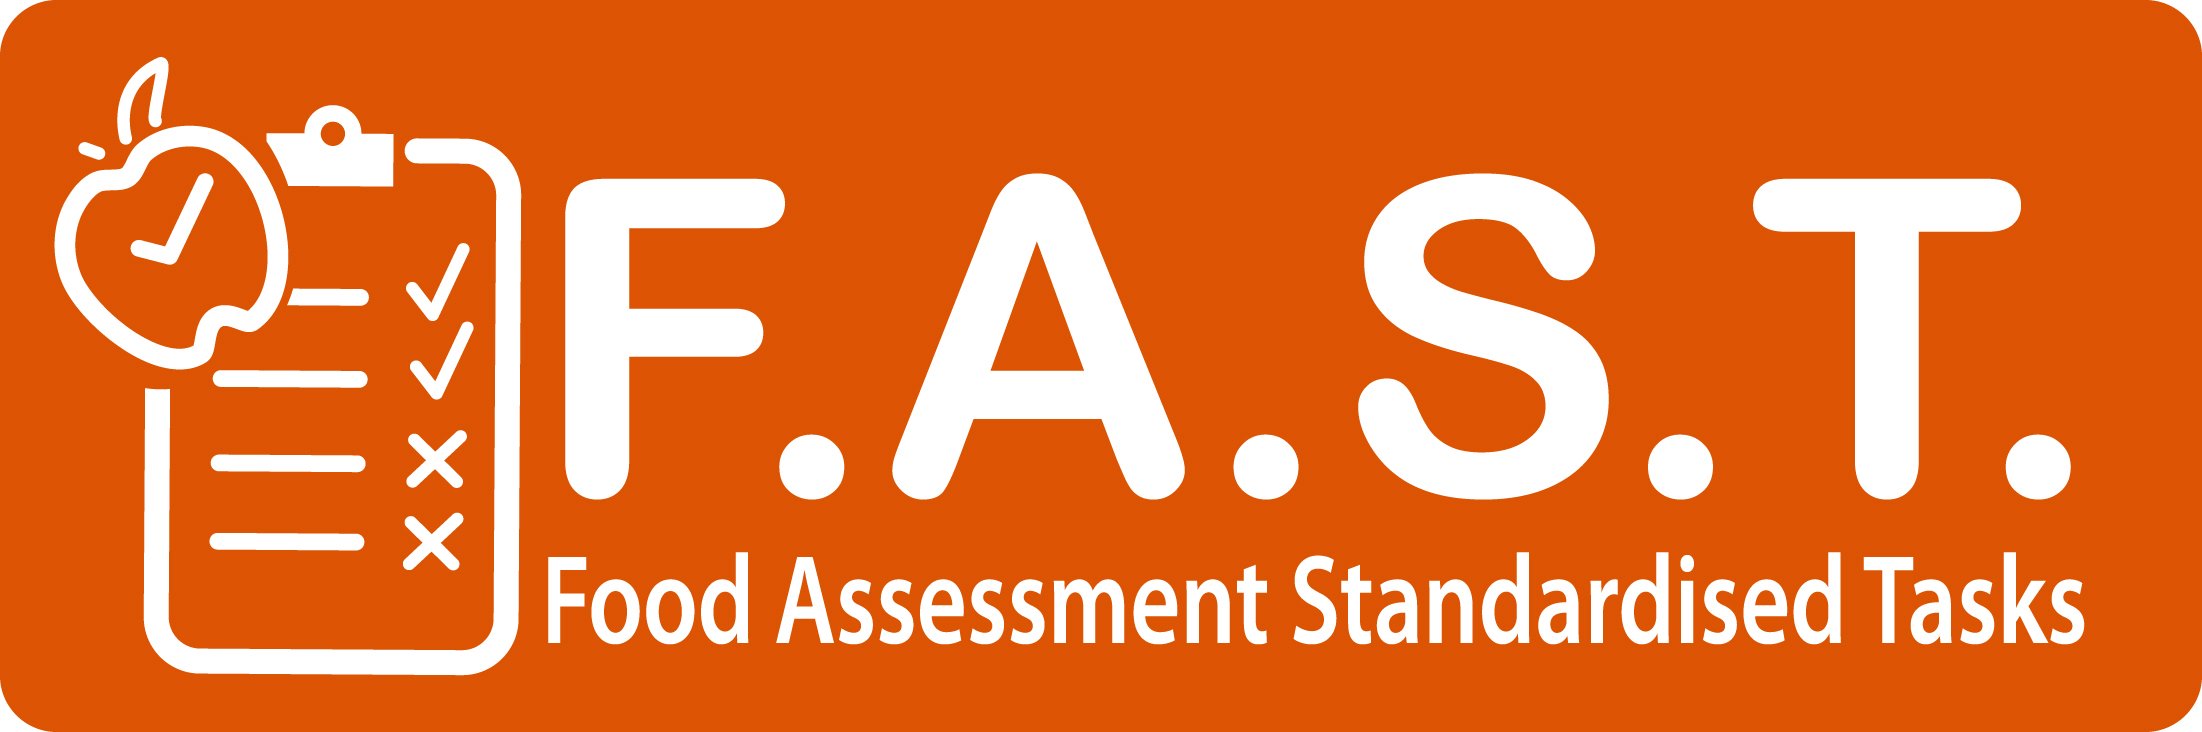 Food Assessment Standardised Tasks (FAST)